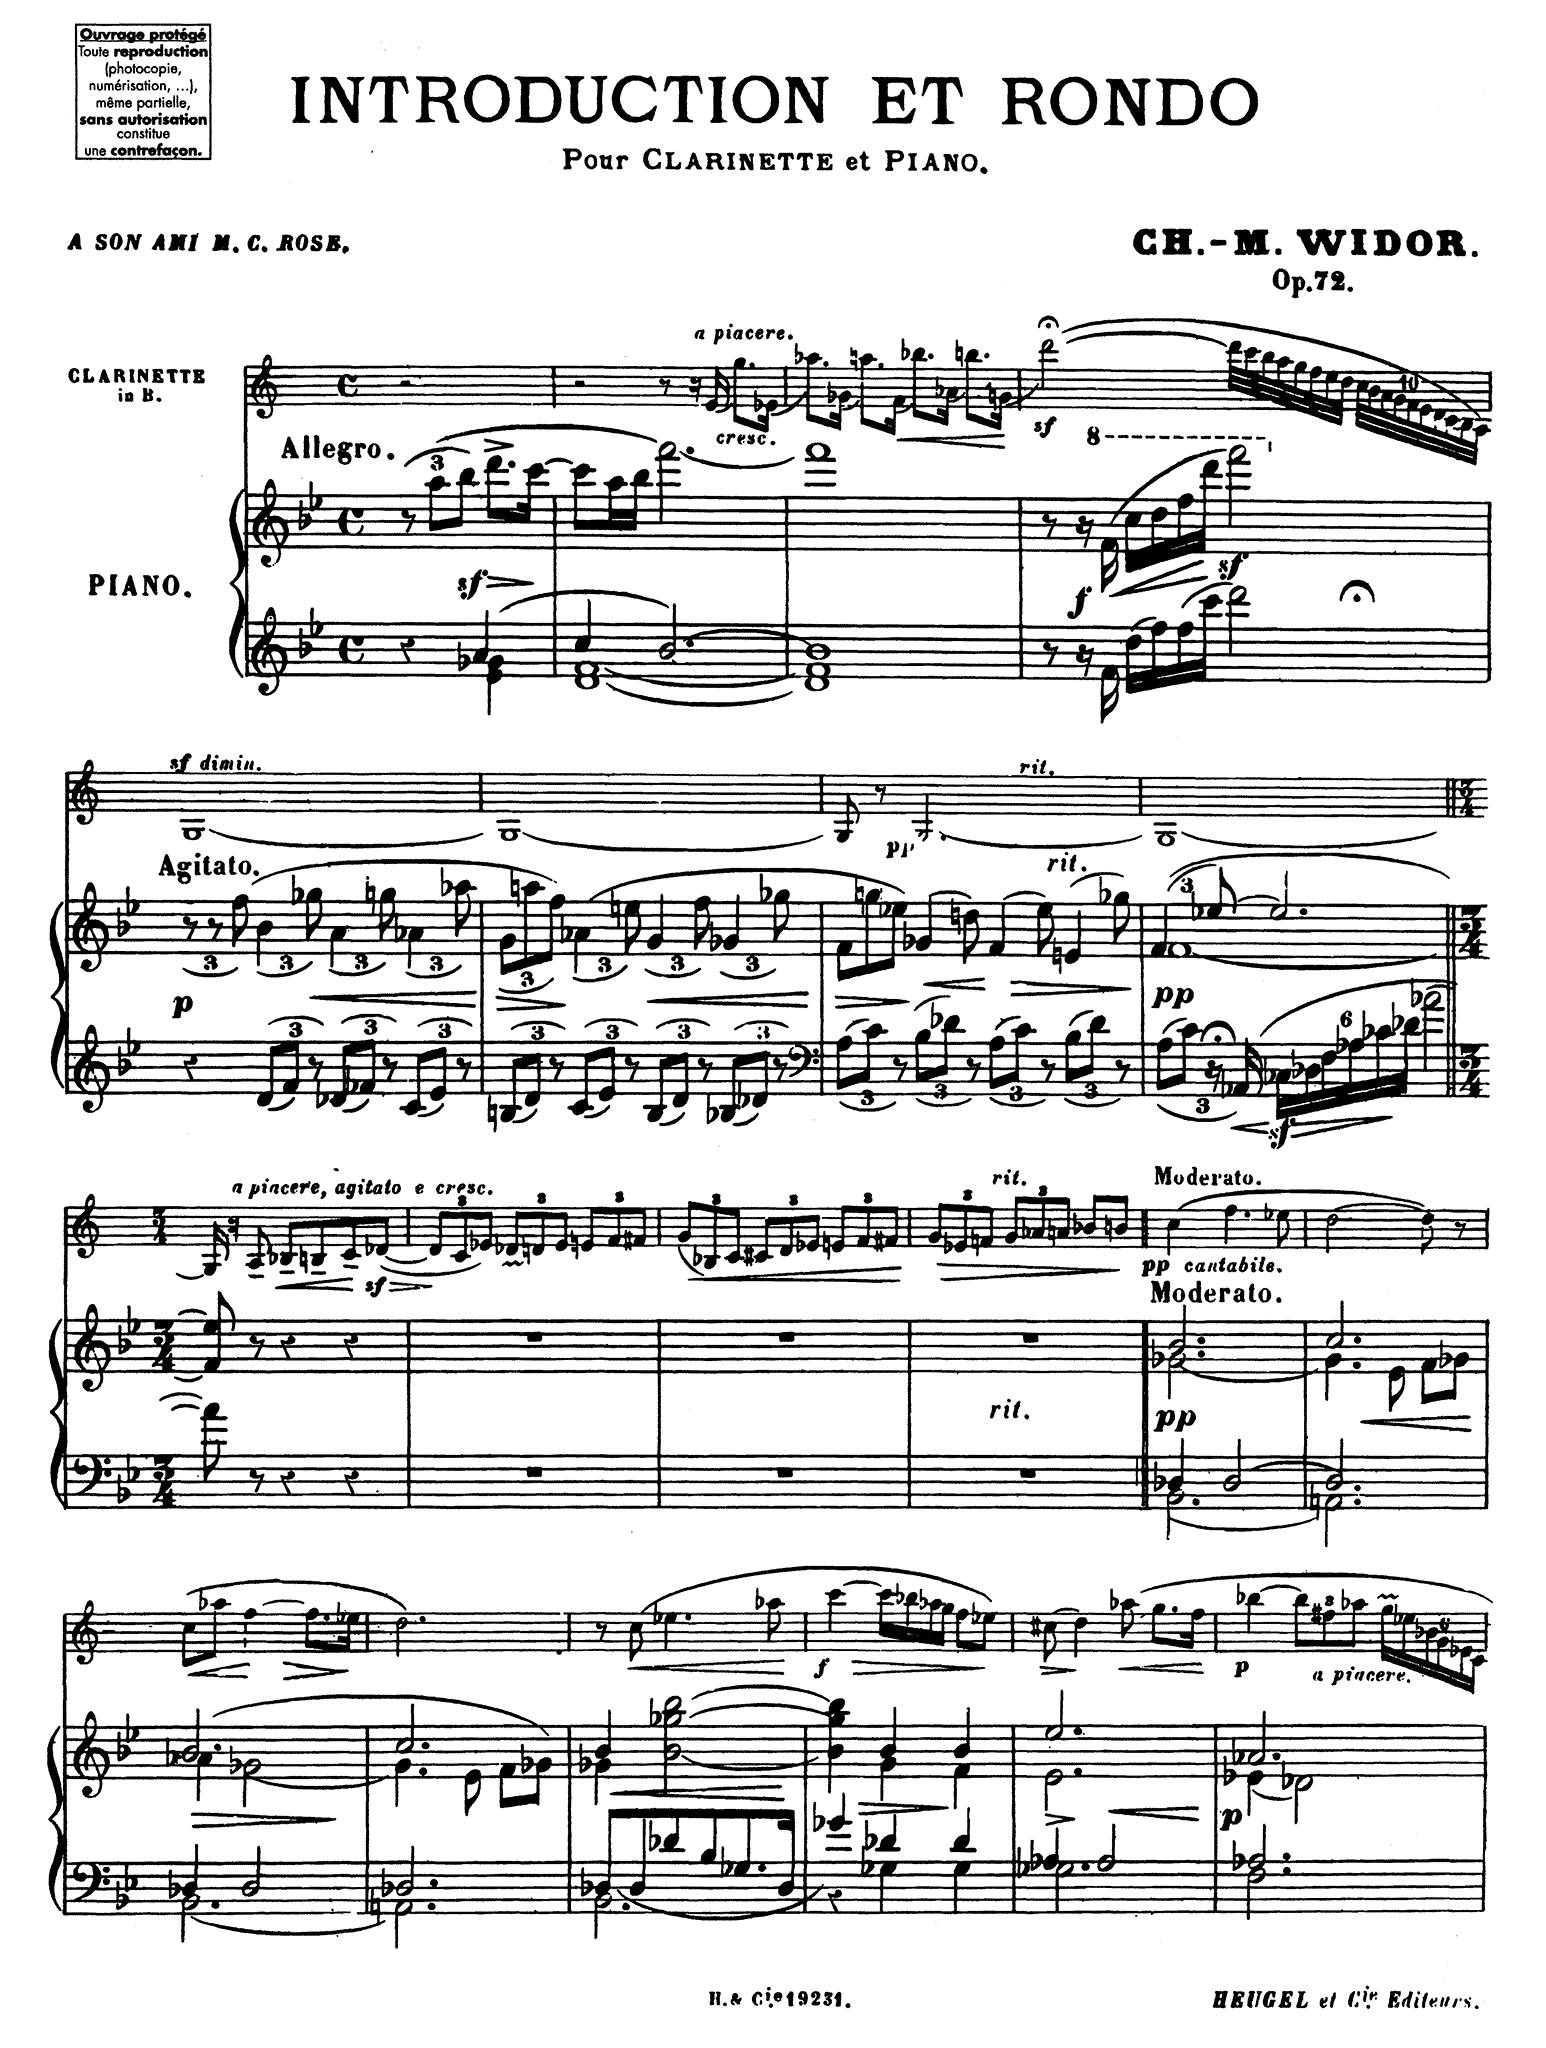 Widor Introduction et rondo, Op. 72 Score